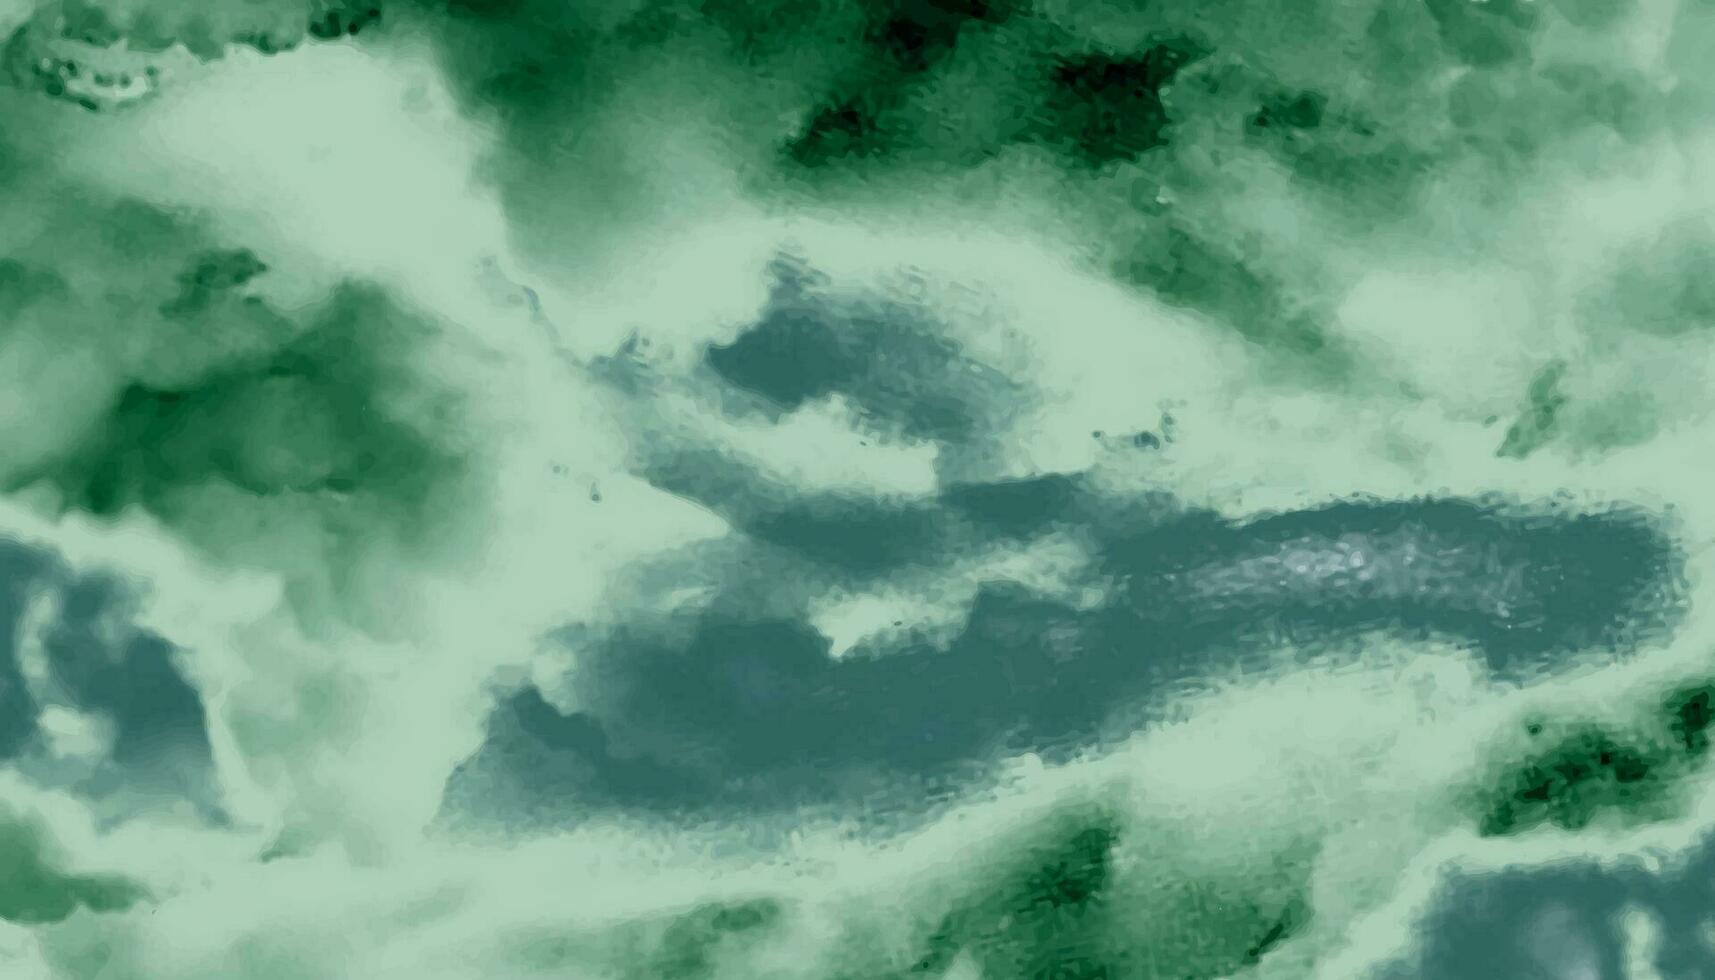 kleurrijk waterverf achtergrond van abstract zonsondergang lucht met gezwollen wolken in helder groen en blauw kleur ontwerp. modern waterverf ontwerp wassen aqua geschilderd structuur dichtbij omhoog, grungy vector